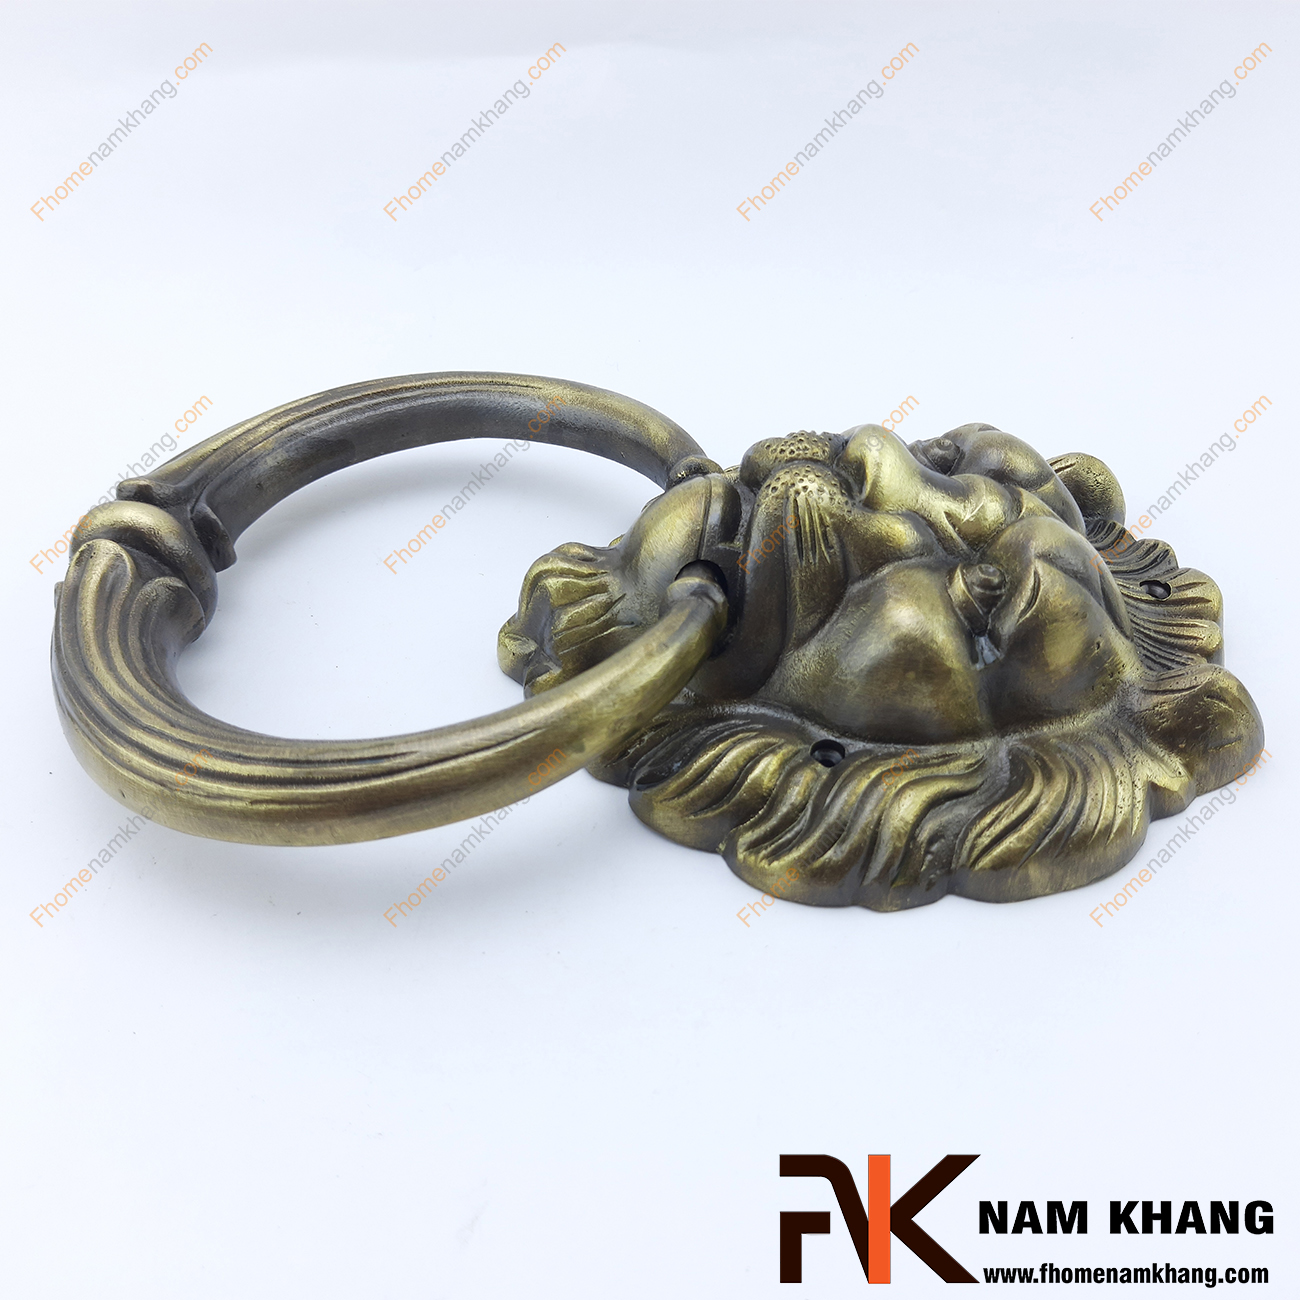 Núm đồng đầu sư tử NKD097 là một sản phẩm nội thất được chế tạo lấy cảm hứng từ sự uy quyền của loài sư tử dũng mãnh. Được đúc áp lực cao từ chất liệu đồng cao cấp núm đầu sư tử có độ bền cao và chịu được lực kéo nắm tốt.